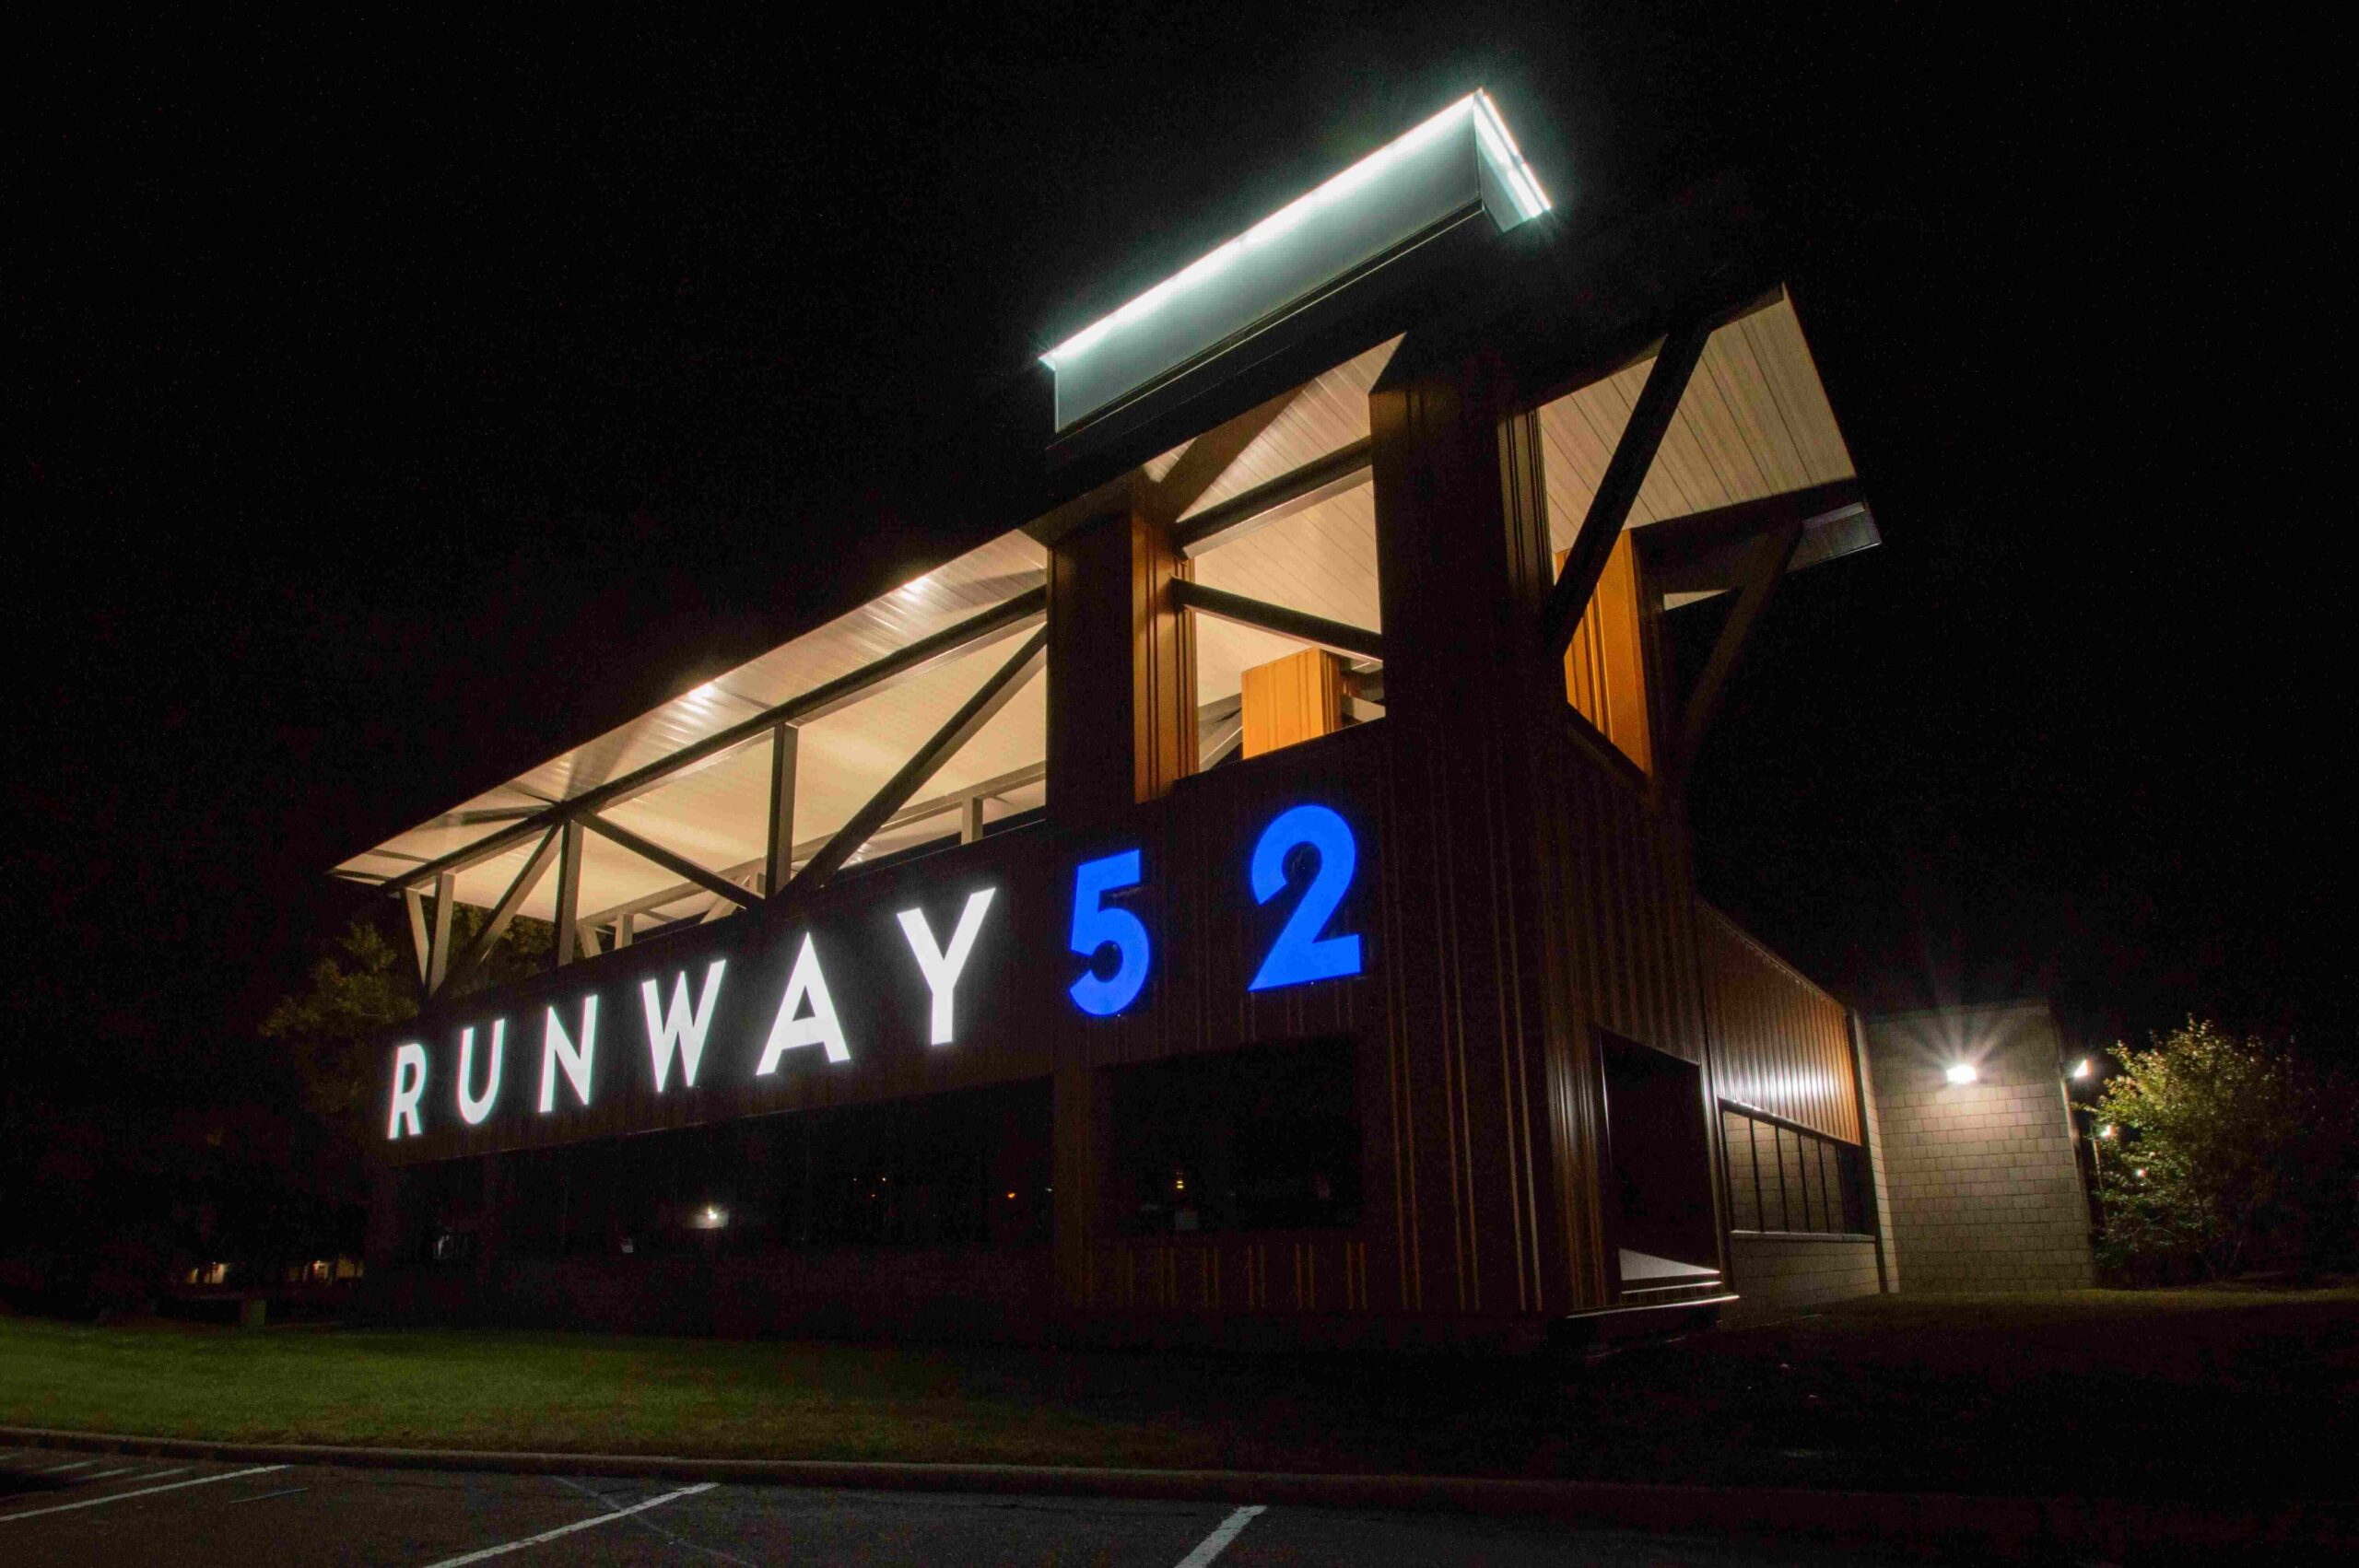 Runway 52 Neon Sign